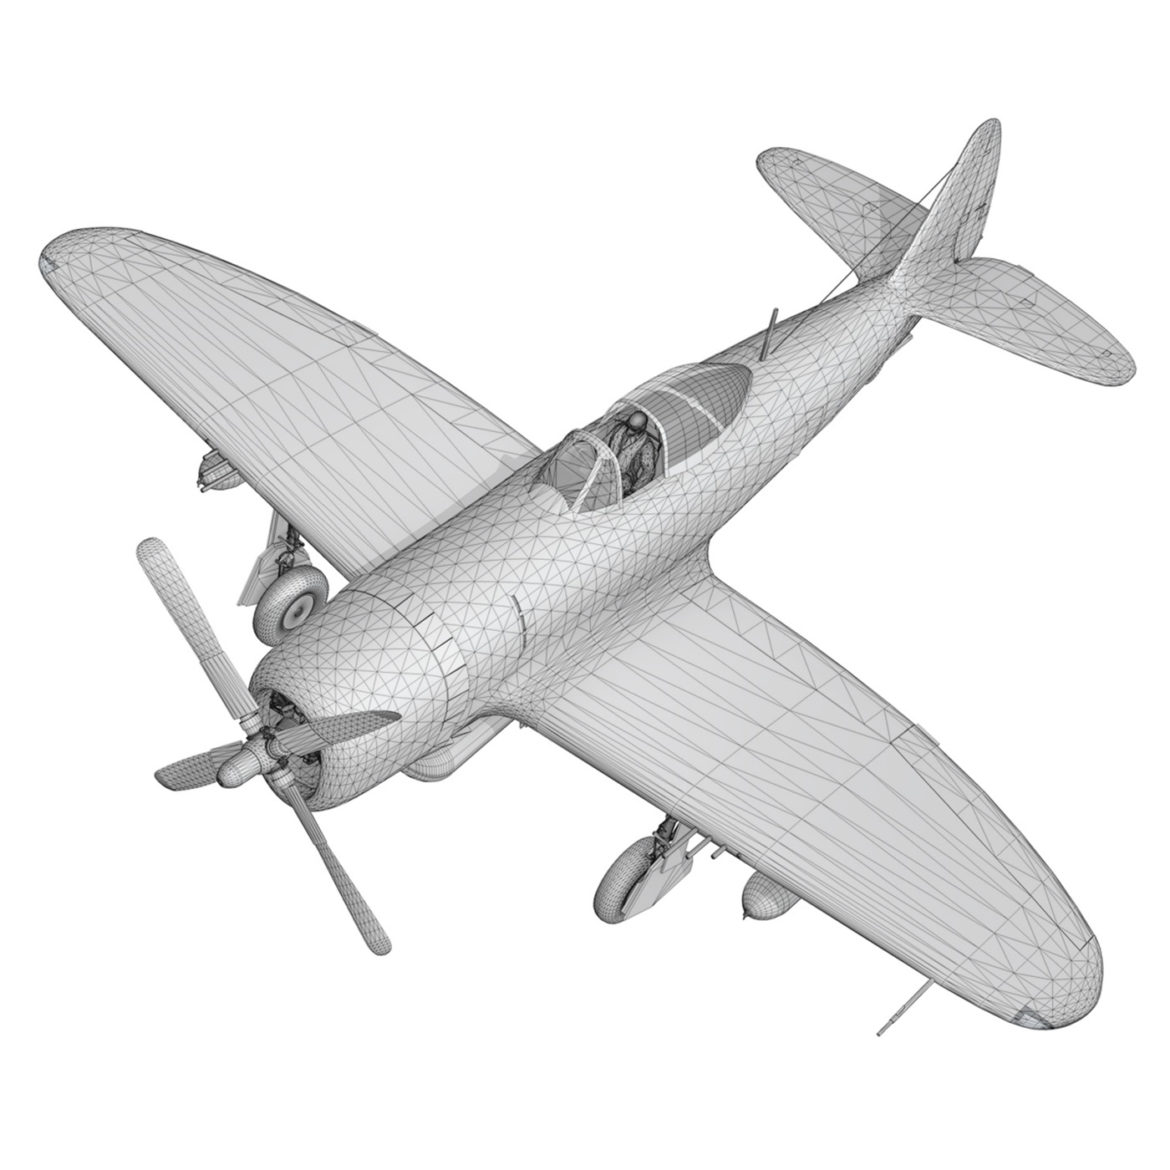 republic p-47d thunderbolt – torrid tessie 3d model 3ds c4d lwo lw lws obj fbx 303880